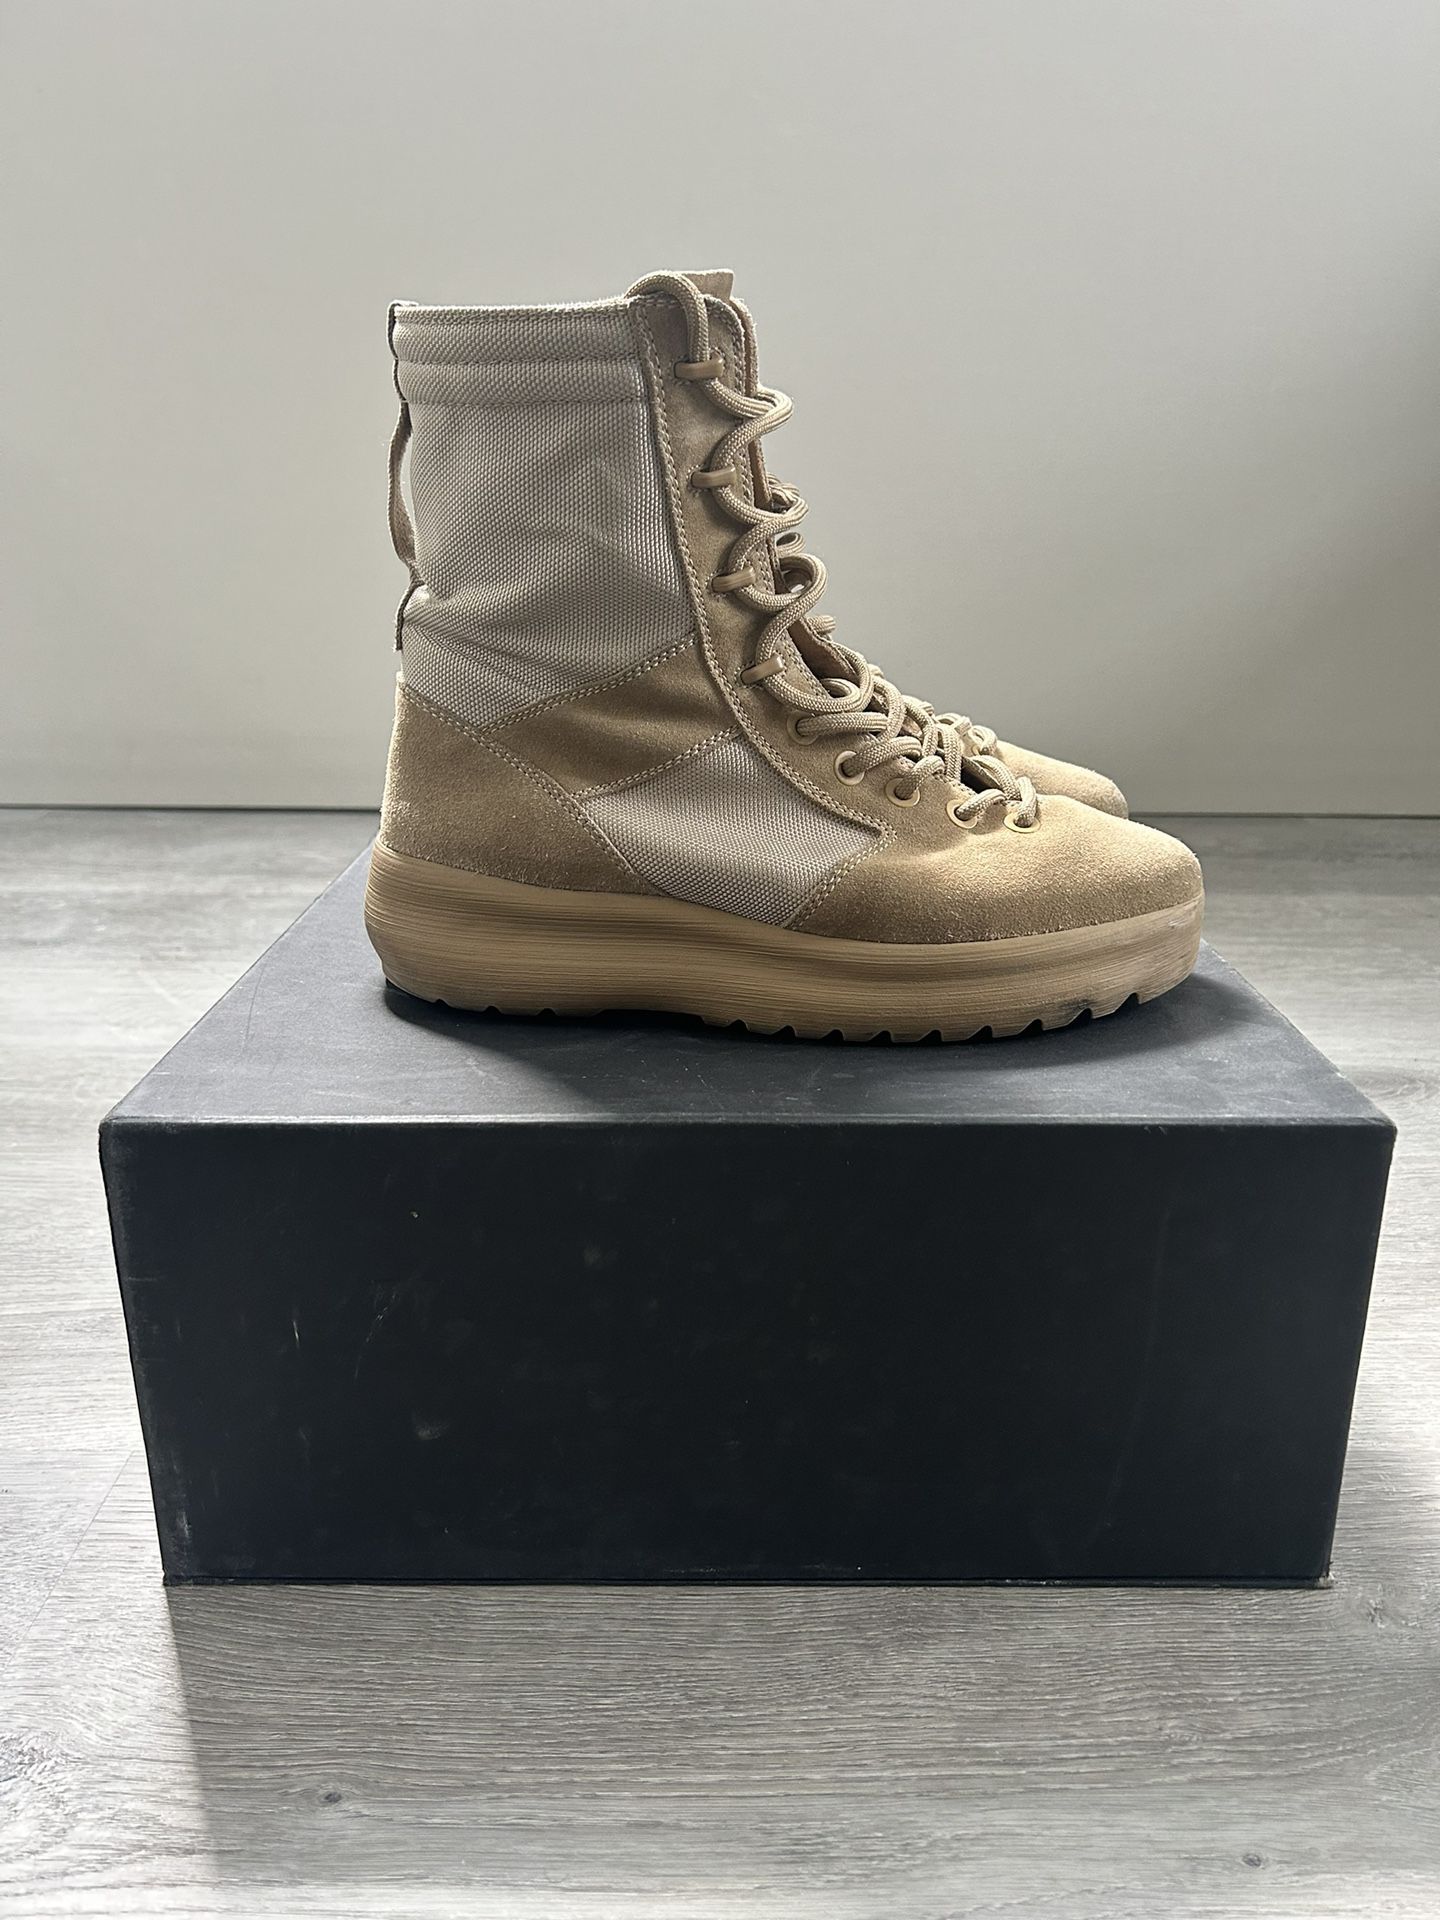 Yeezy Military Boot ‘Rock’ Season 3